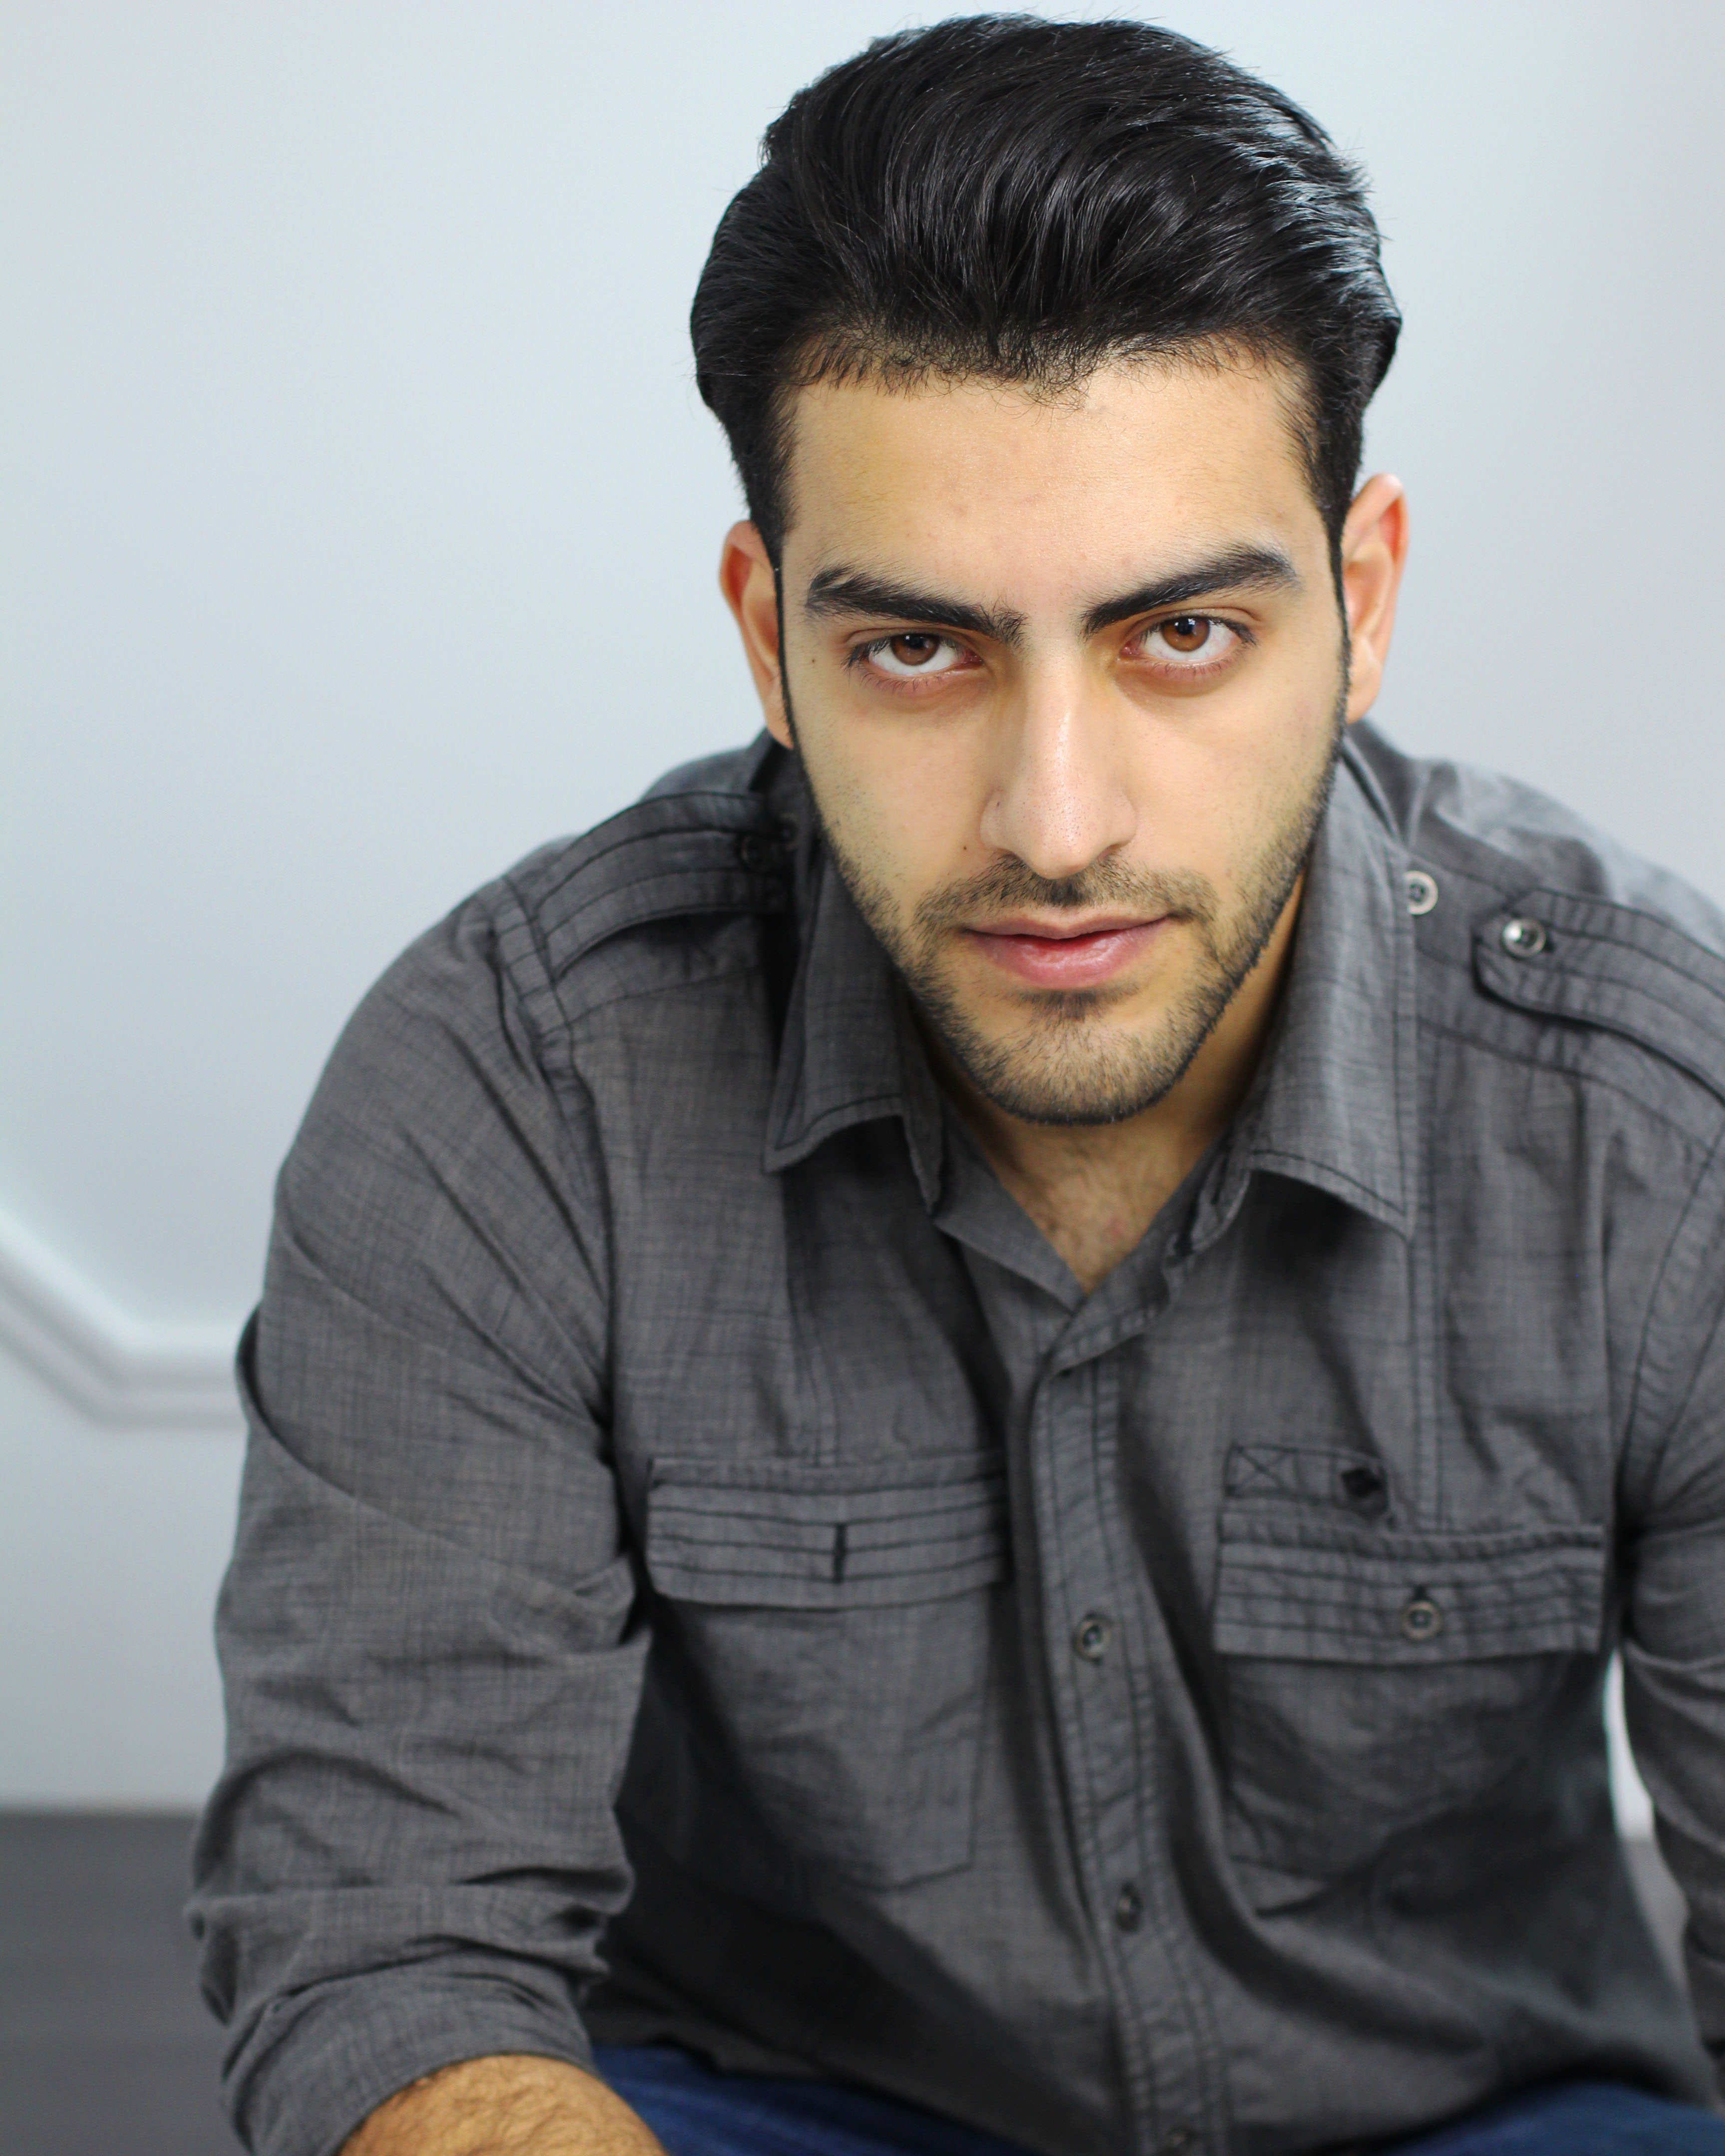 Araz Yaghoubi